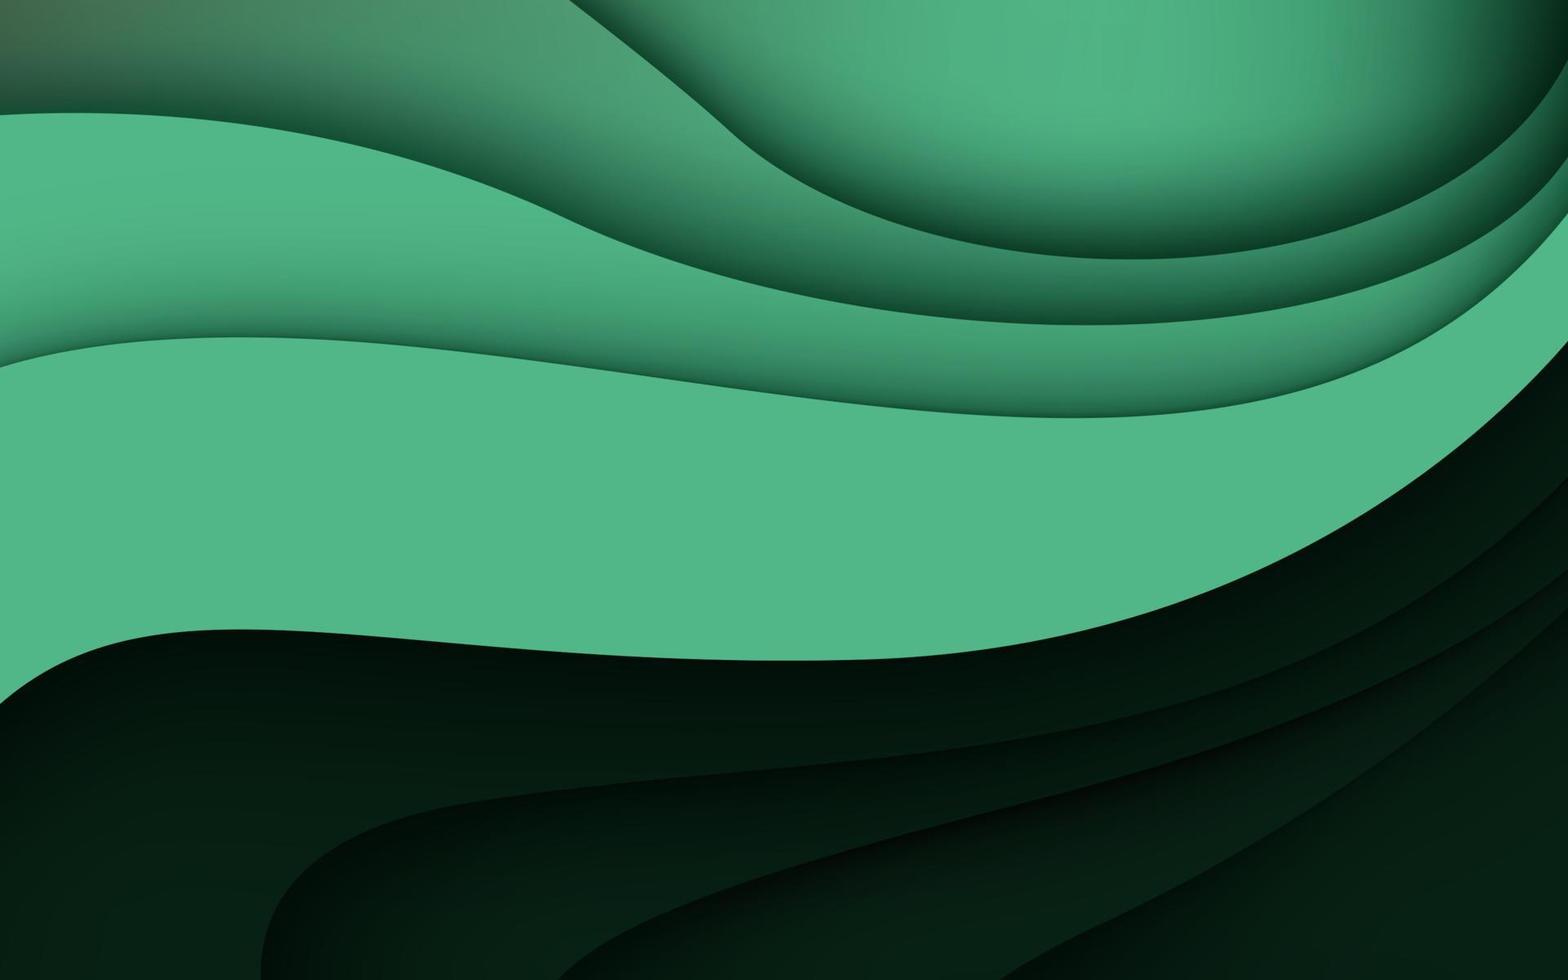 couches de papercut 3d de texture verte multicouches dans la bannière de vecteur de gradient. conception abstraite de fond d'art découpé en papier pour le modèle de site Web. concept de carte topographique ou coupe de papier origami lisse